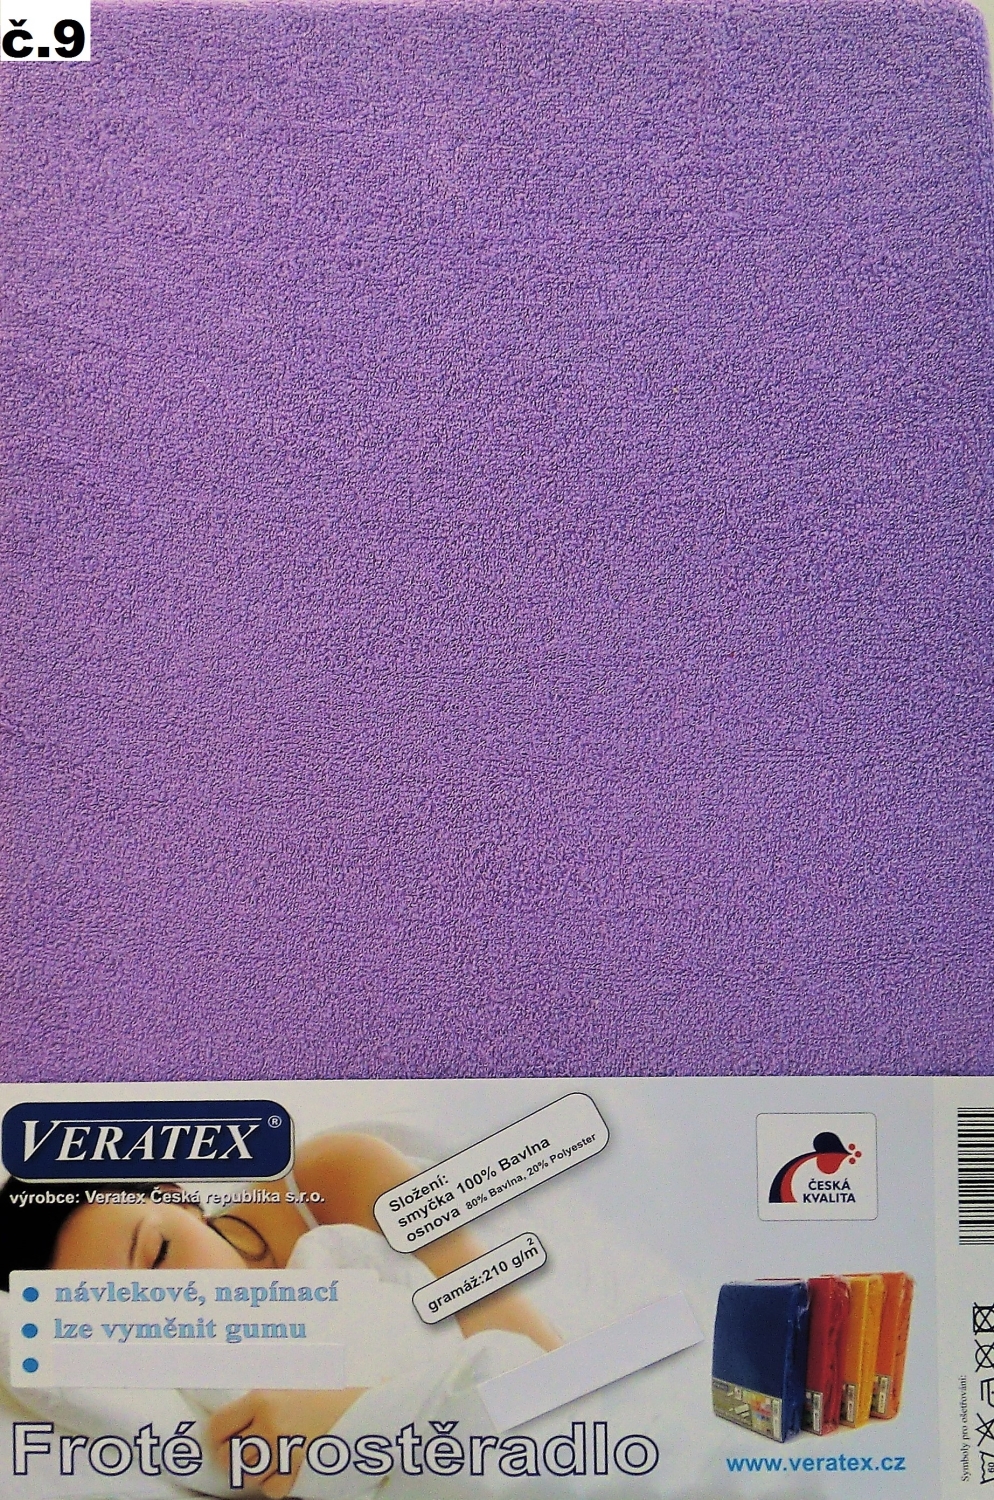 Veratex Froté prostěradlo dvoulůžko 180x200/16cm (č. 9- tm.fialová)